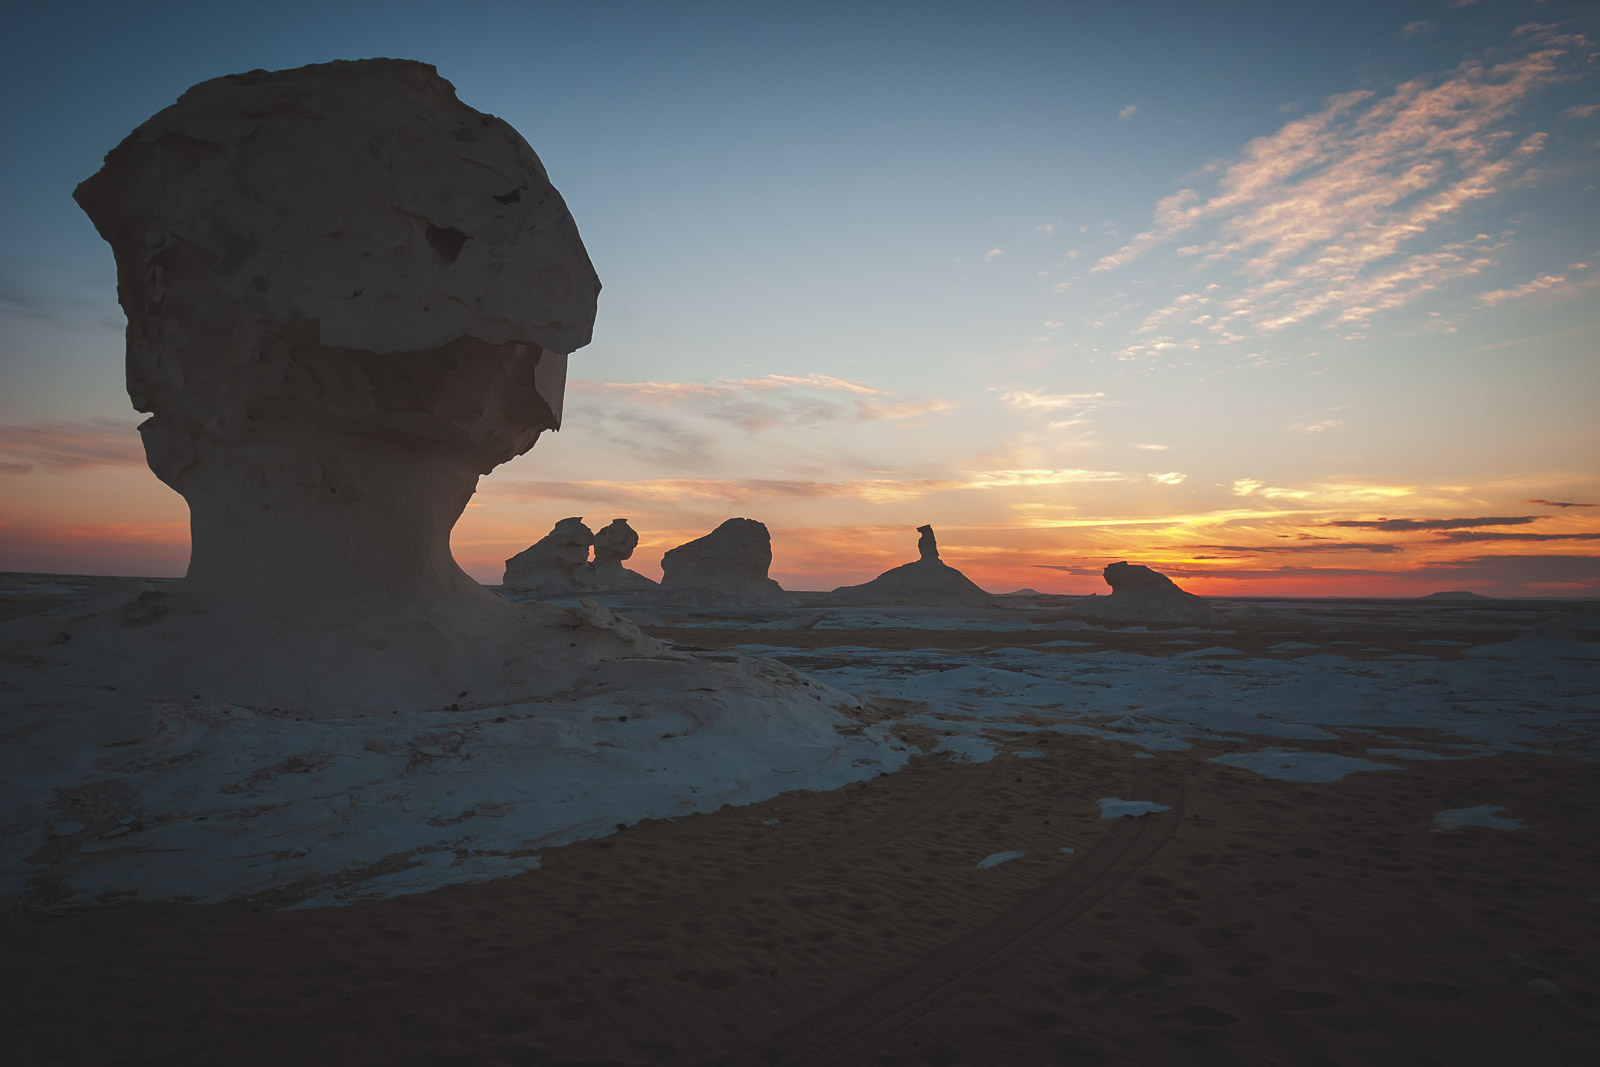 White desert Egypt at sunset